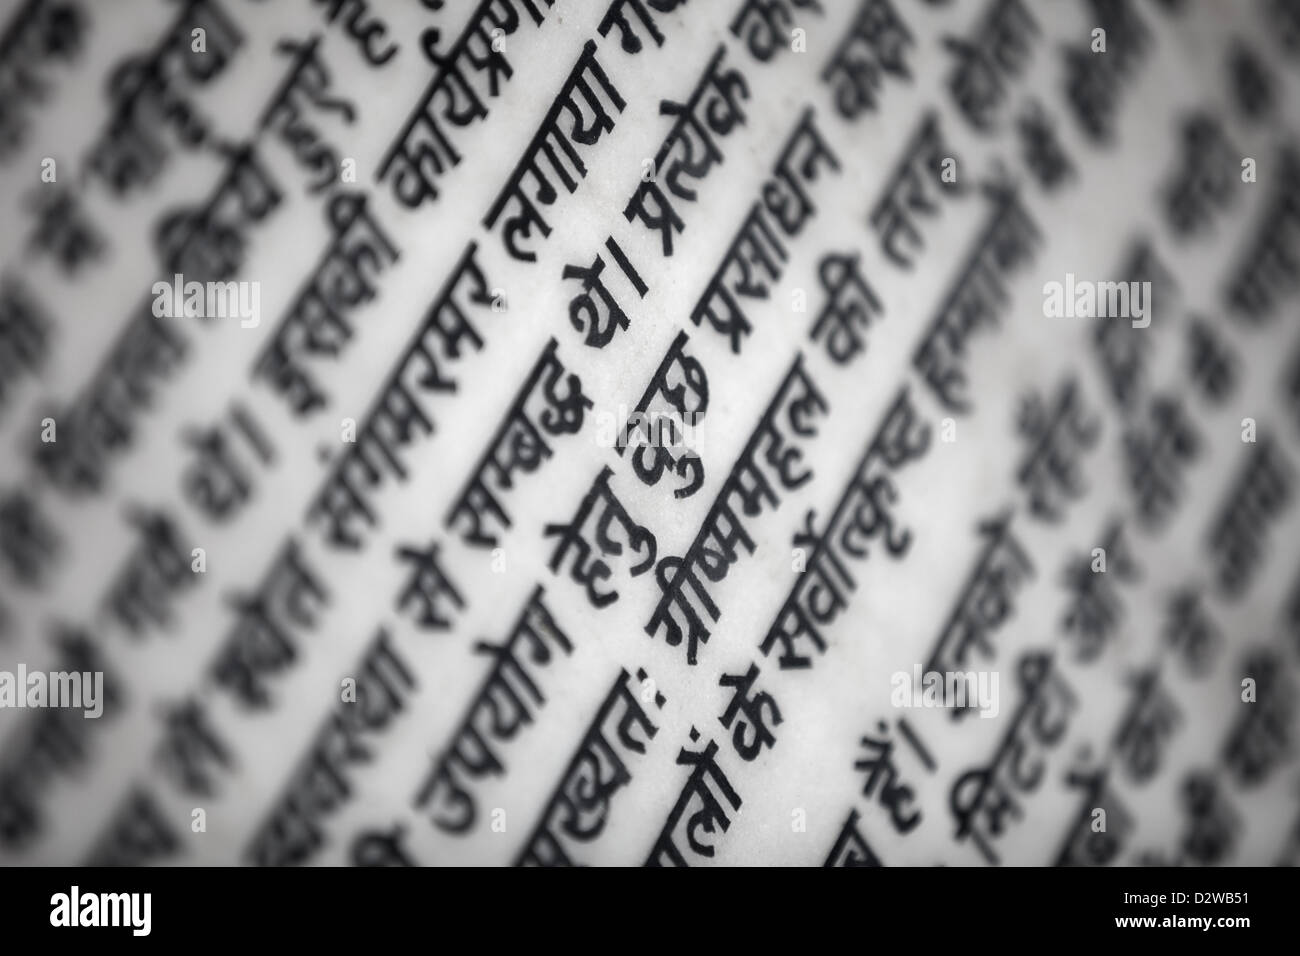 Texte religieux hindi sur mur blanc Banque D'Images